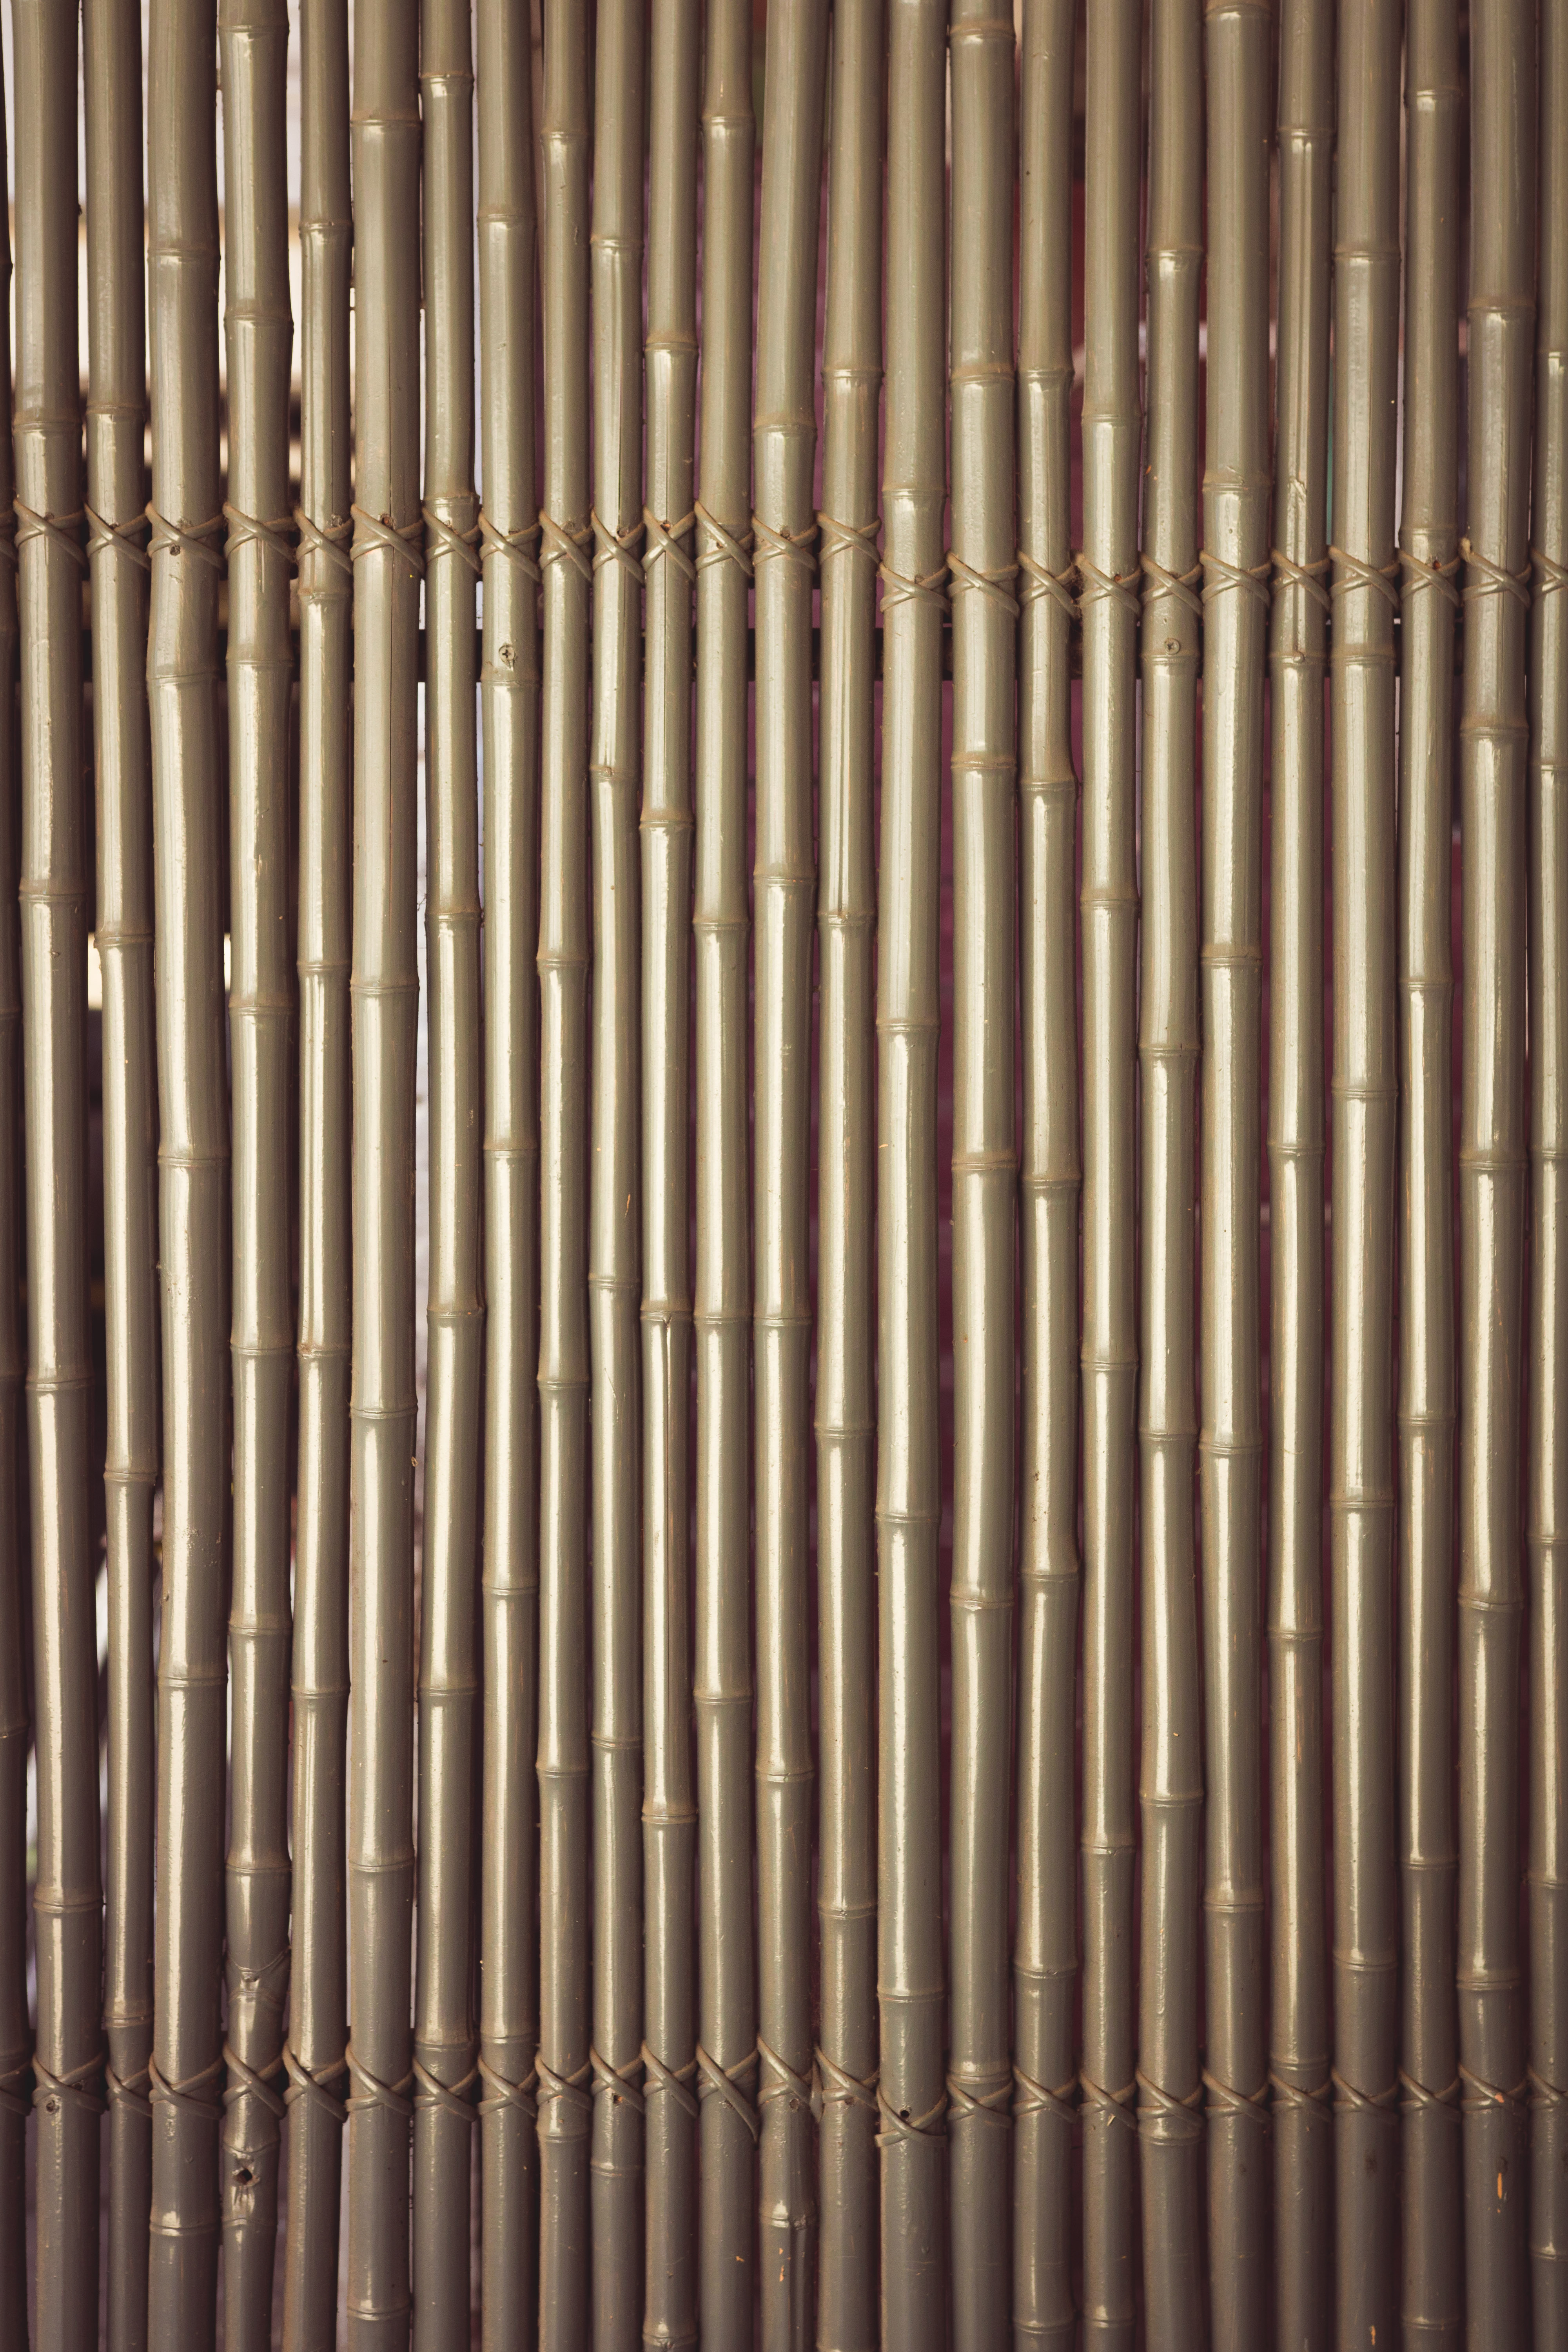 Bamboo walls